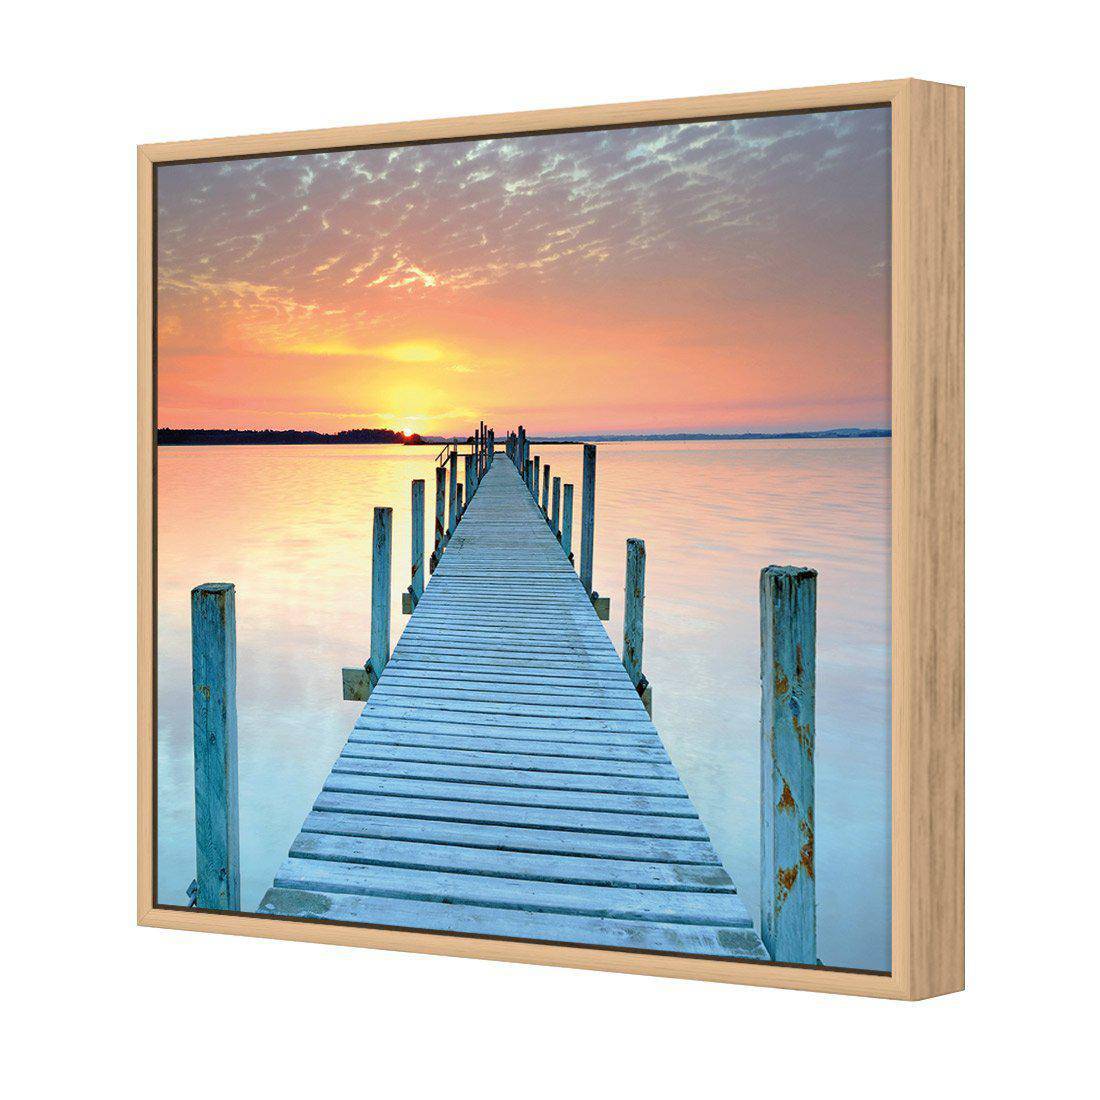 Sunset Pier Canvas Art-Canvas-Wall Art Designs-30x30cm-Canvas - Oak Frame-Wall Art Designs